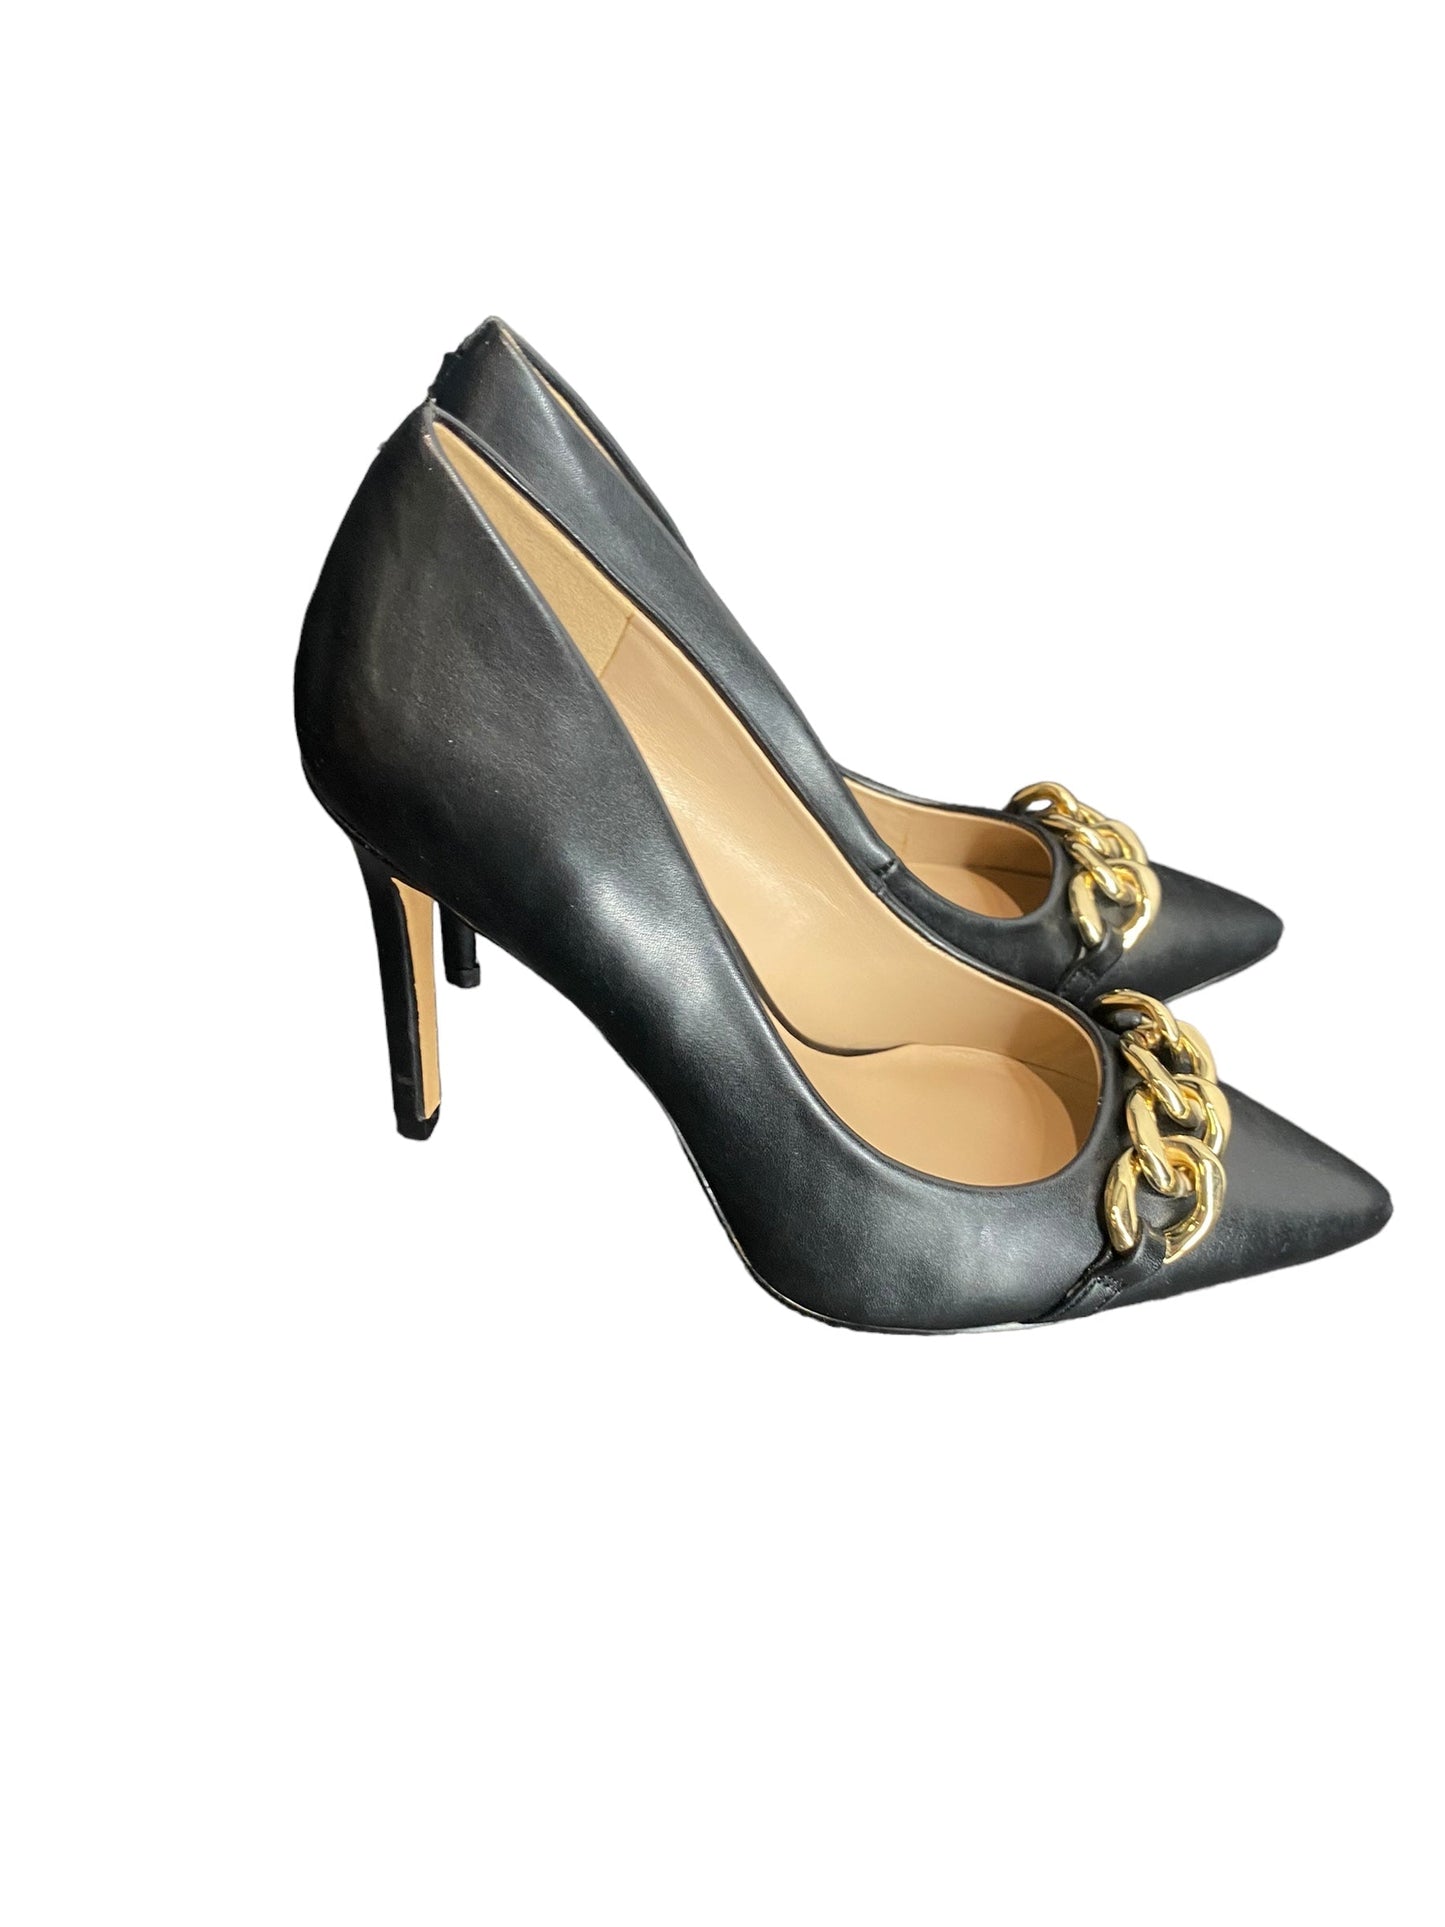 Black Shoes Heels Stiletto Mix No 6, Size 8.5